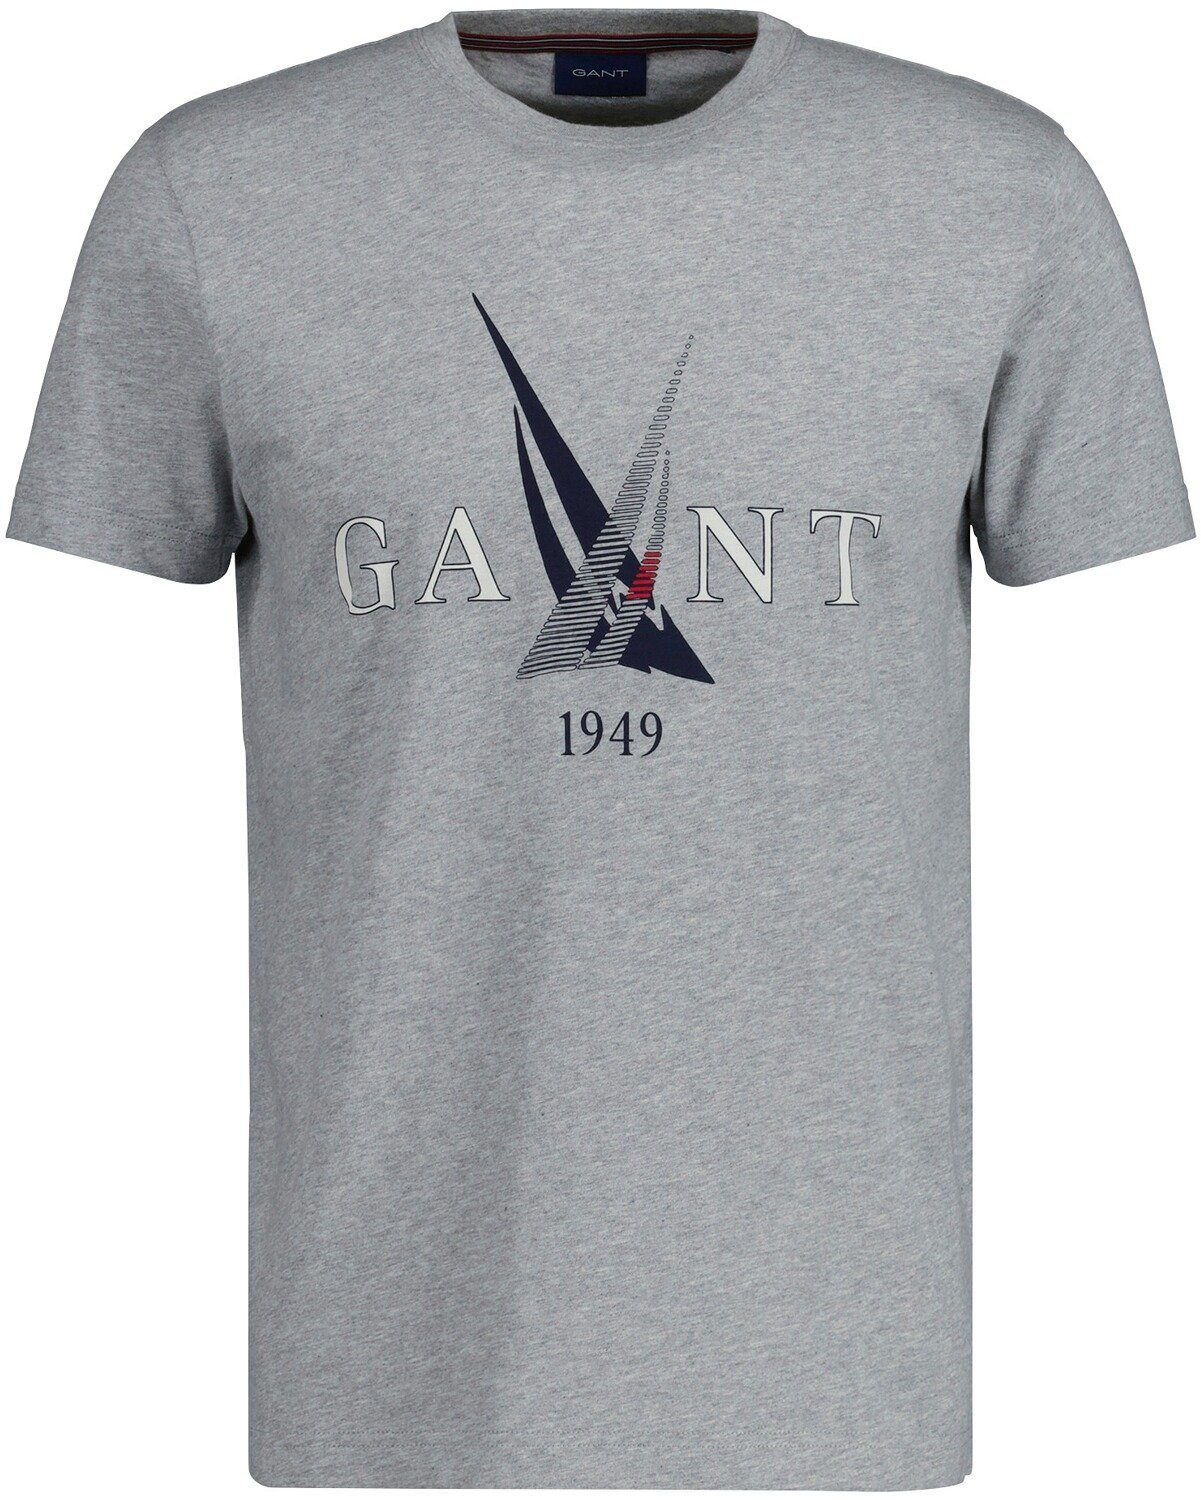 Gant T-Shirt T-Shirt Sail Grey Melange